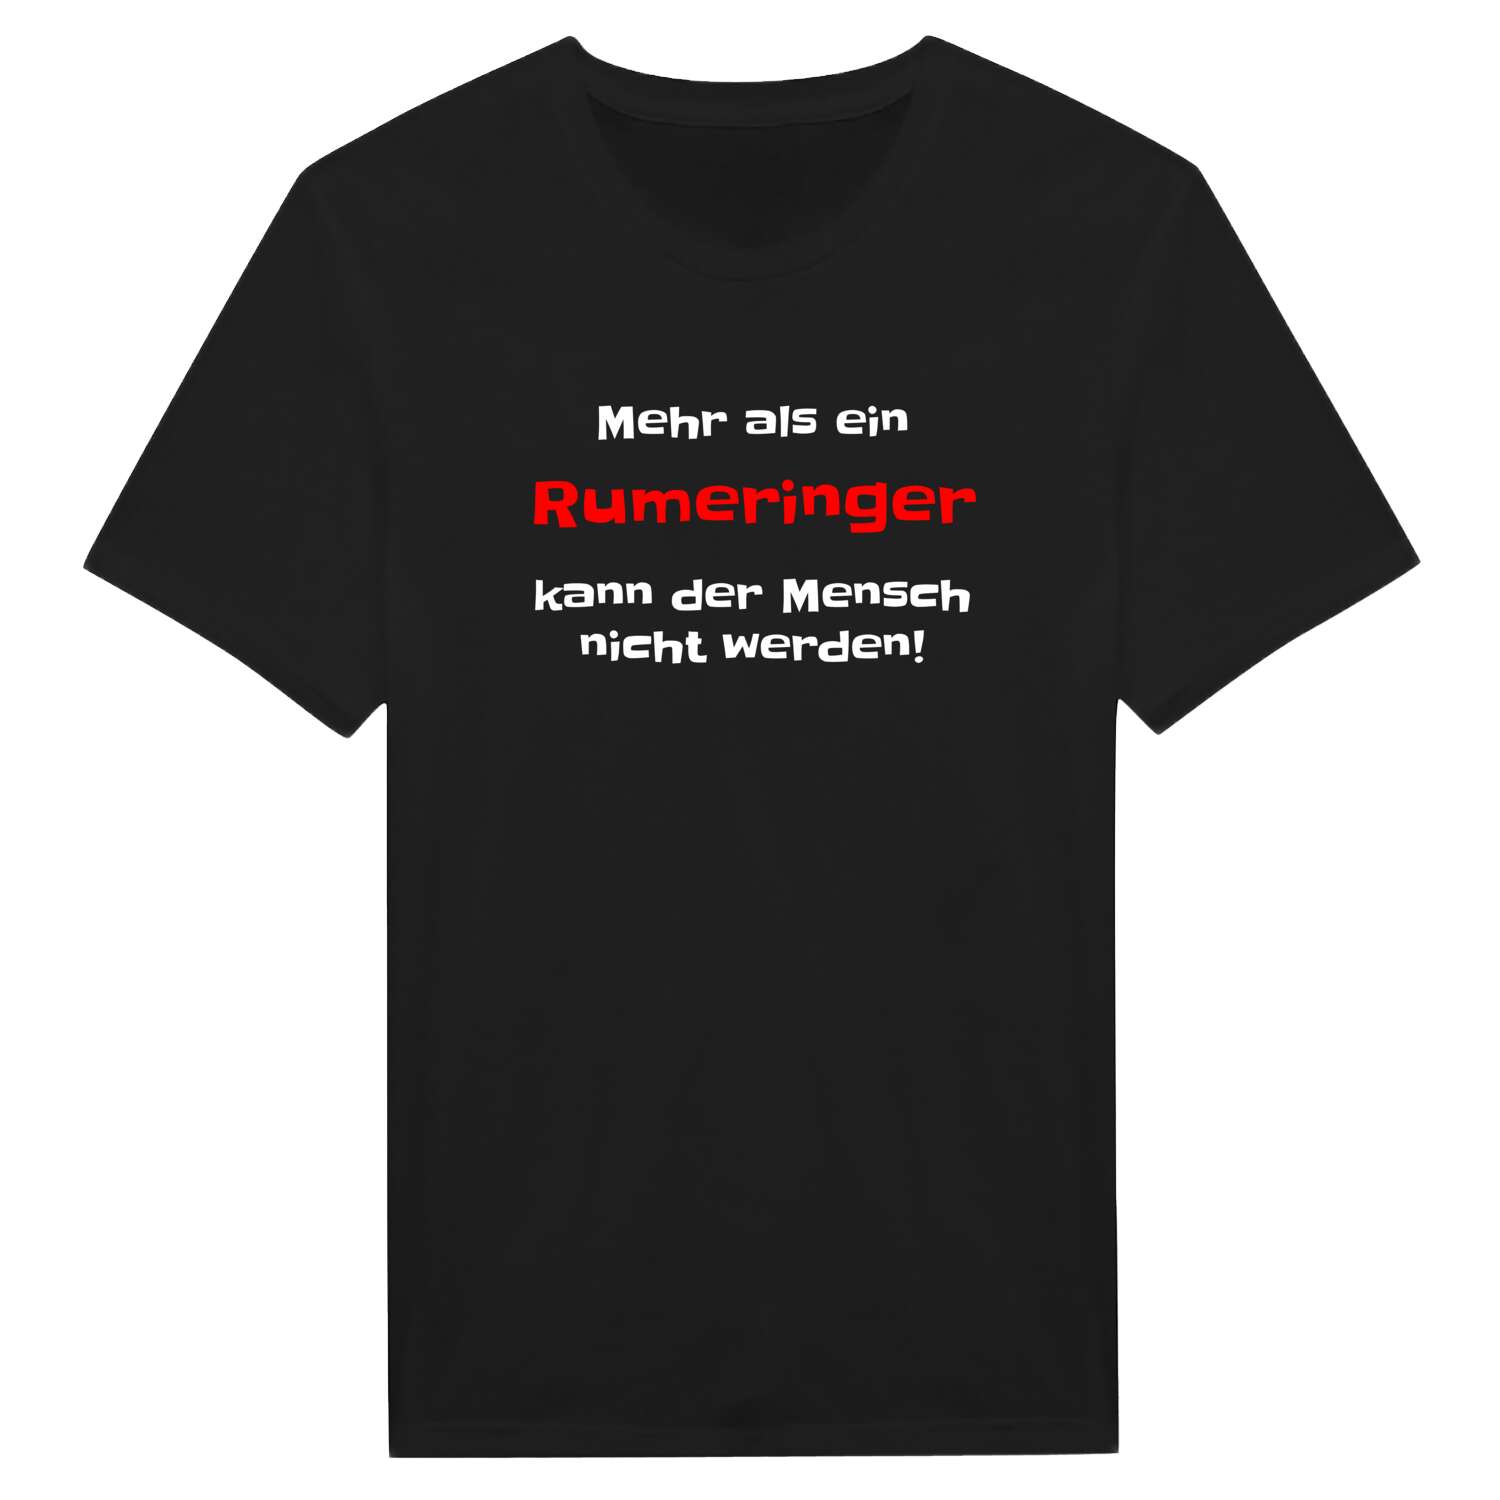 Rumering T-Shirt »Mehr als ein«